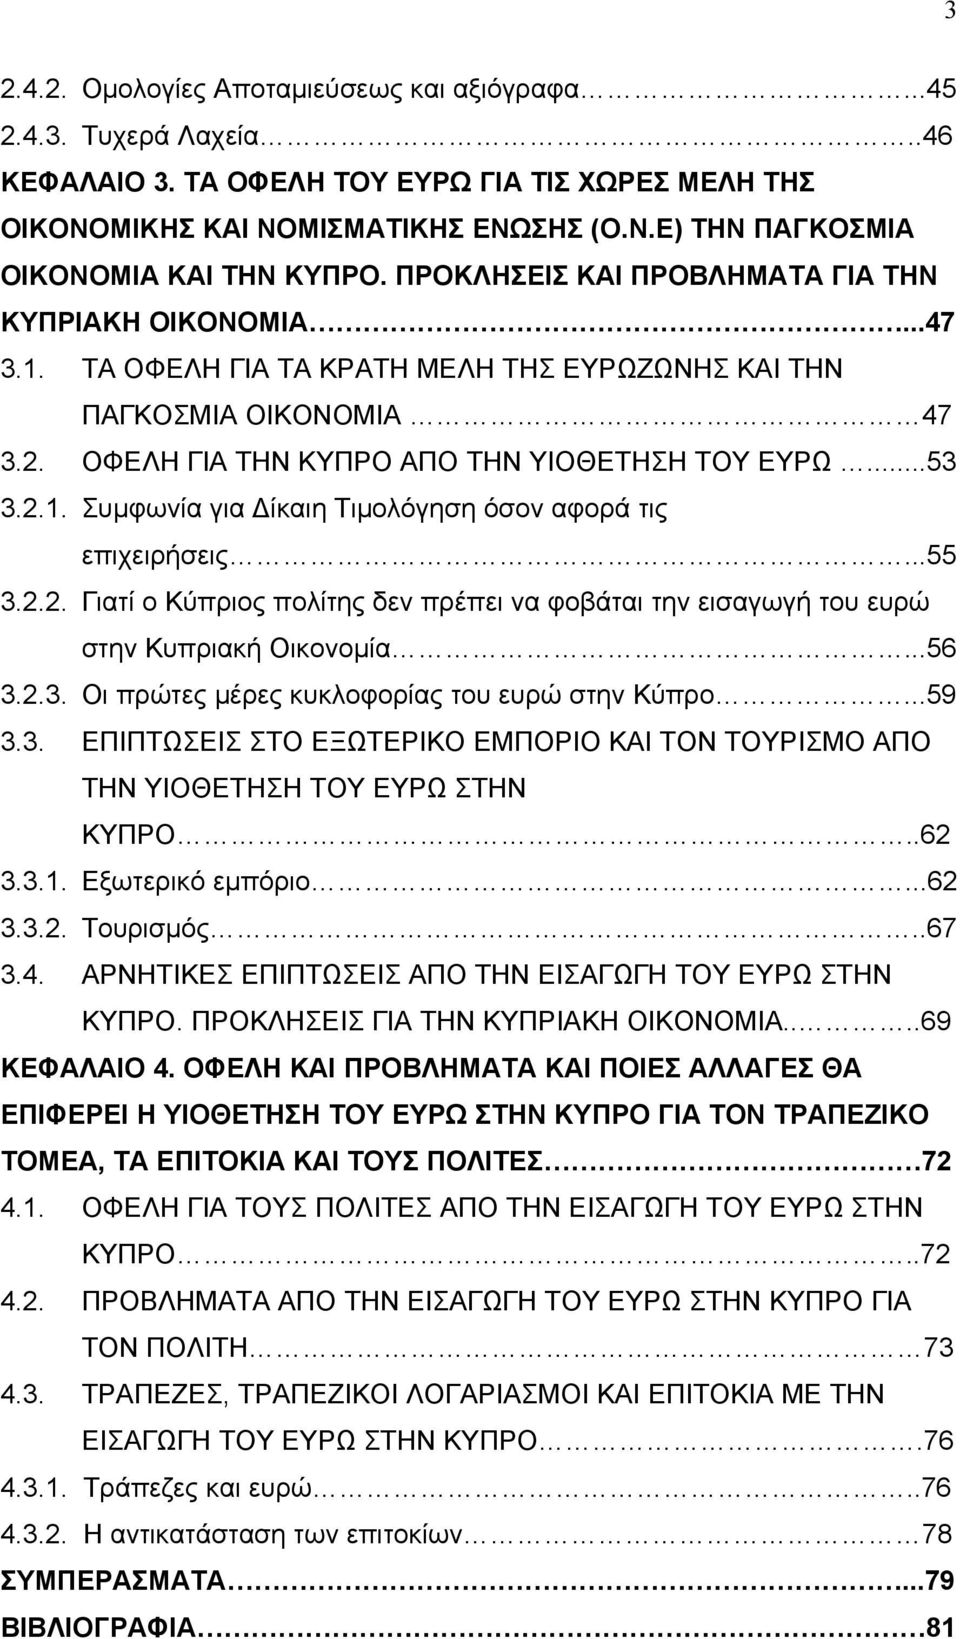 ..55 3.2.2. Γιατί ο Κύπριος πολίτης δεν πρέπει να φοβάται την εισαγωγή του ευρώ στην Κυπριακή Οικονομία...56 3.2.3. Οι πρώτες μέρες κυκλοφορίας του ευρώ στην Κύπρο...59 3.3. ΕΠΙΠΤΩΣΕΙΣ ΣΤΟ ΕΞΩΤΕΡΙΚΟ ΕΜΠΟΡΙΟ ΚΑΙ ΤΟΝ ΤΟΥΡΙΣΜΟ ΑΠΟ ΤΗΝ ΥΙΟΘΕΤΗΣΗ ΤΟΥ ΕΥΡΩ ΣΤΗΝ ΚΥΠΡΟ.